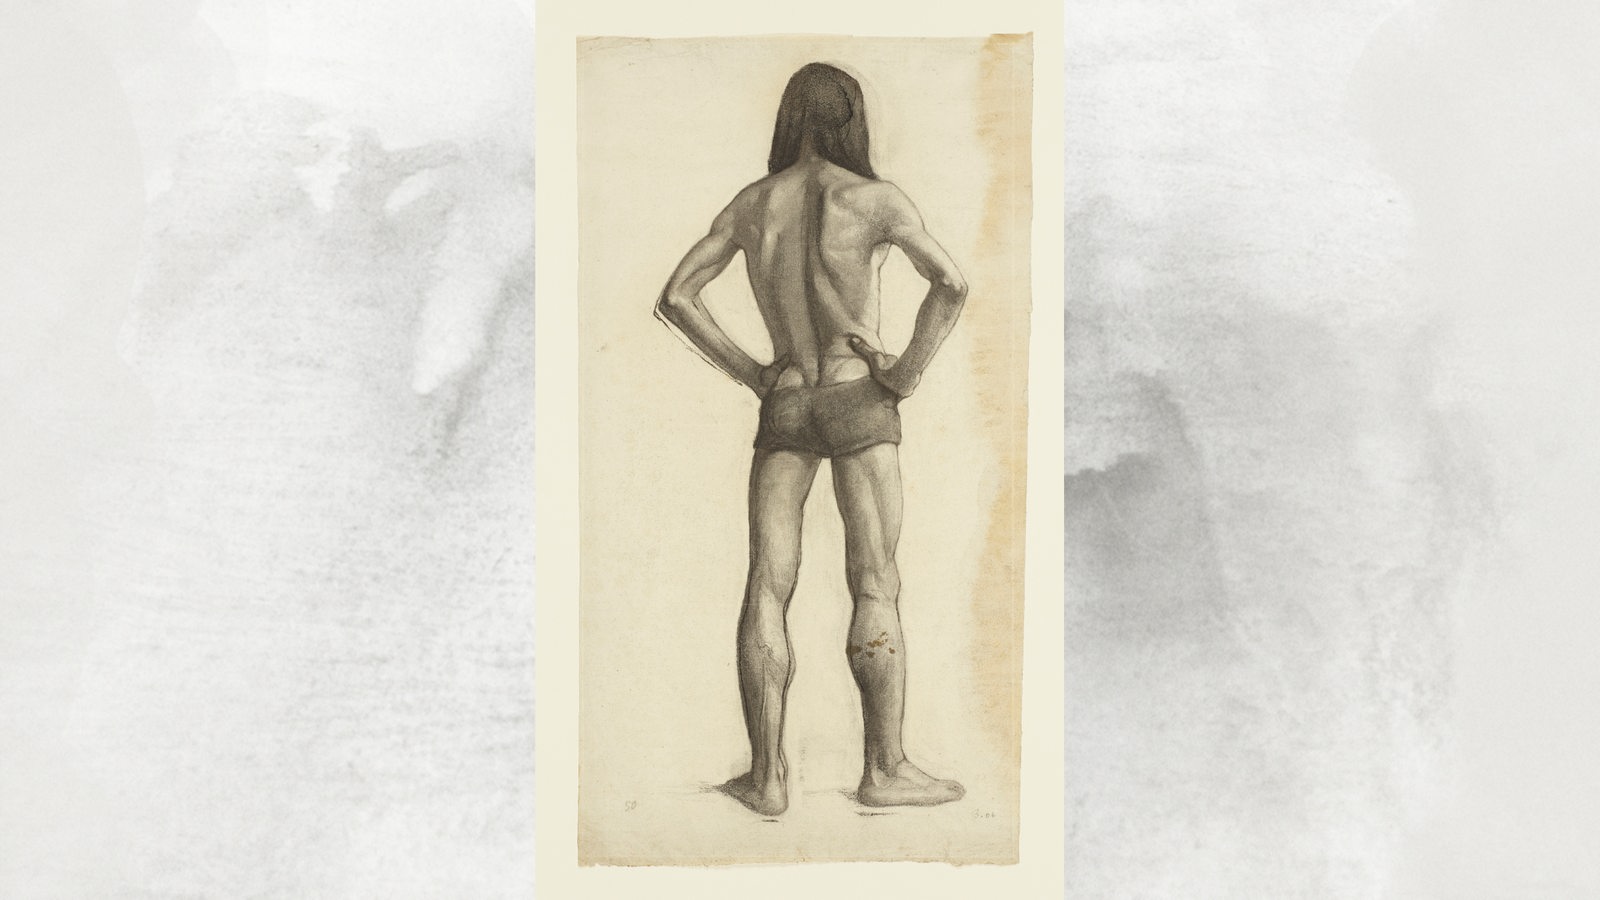 Paula Modersohn-Becker: Stehender männlicher Akt mit langem Haar in Rückenansicht, die Hände in die Hüften gestemmt, 1906